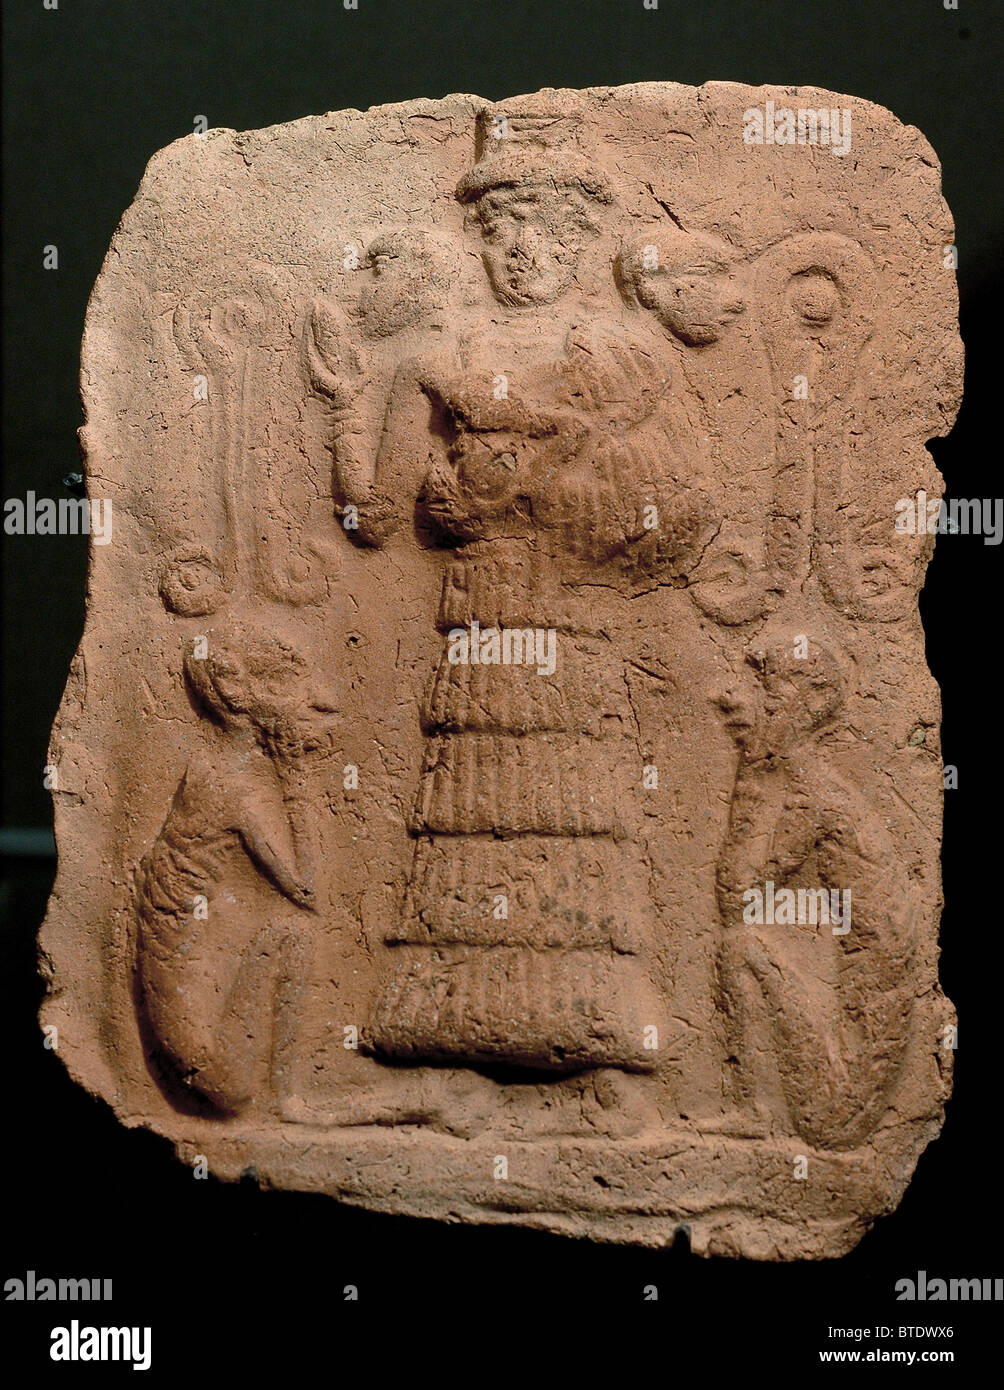 5338. Goddess with apes, Mesopotamia, Eshnunna Stock Photo